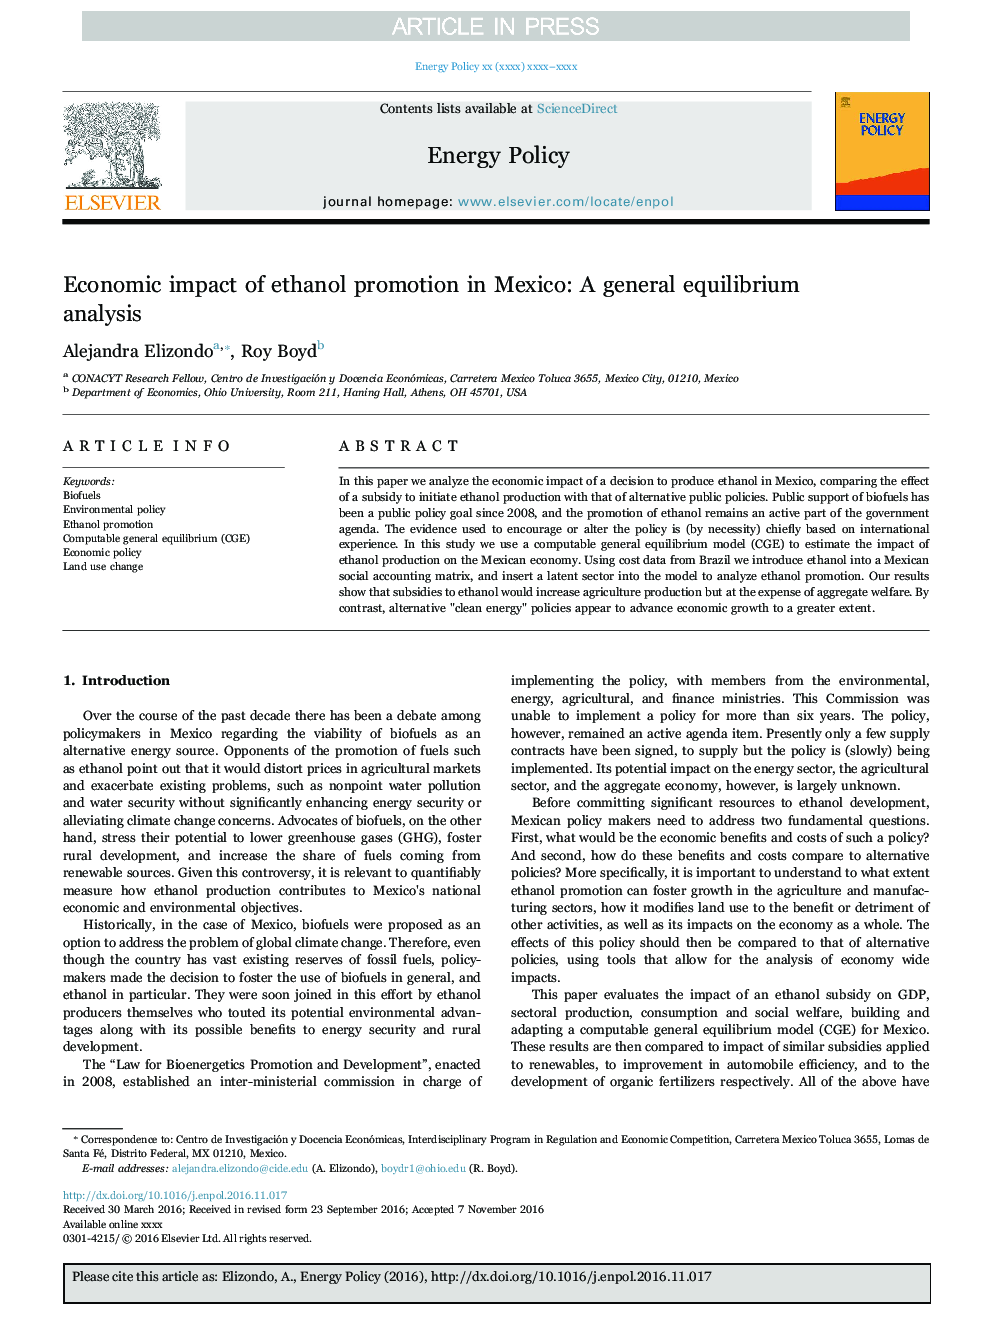 تاثیر اقتصادی ترویج اتانول در مکزیک: یک تحلیل عمومی تعادل 